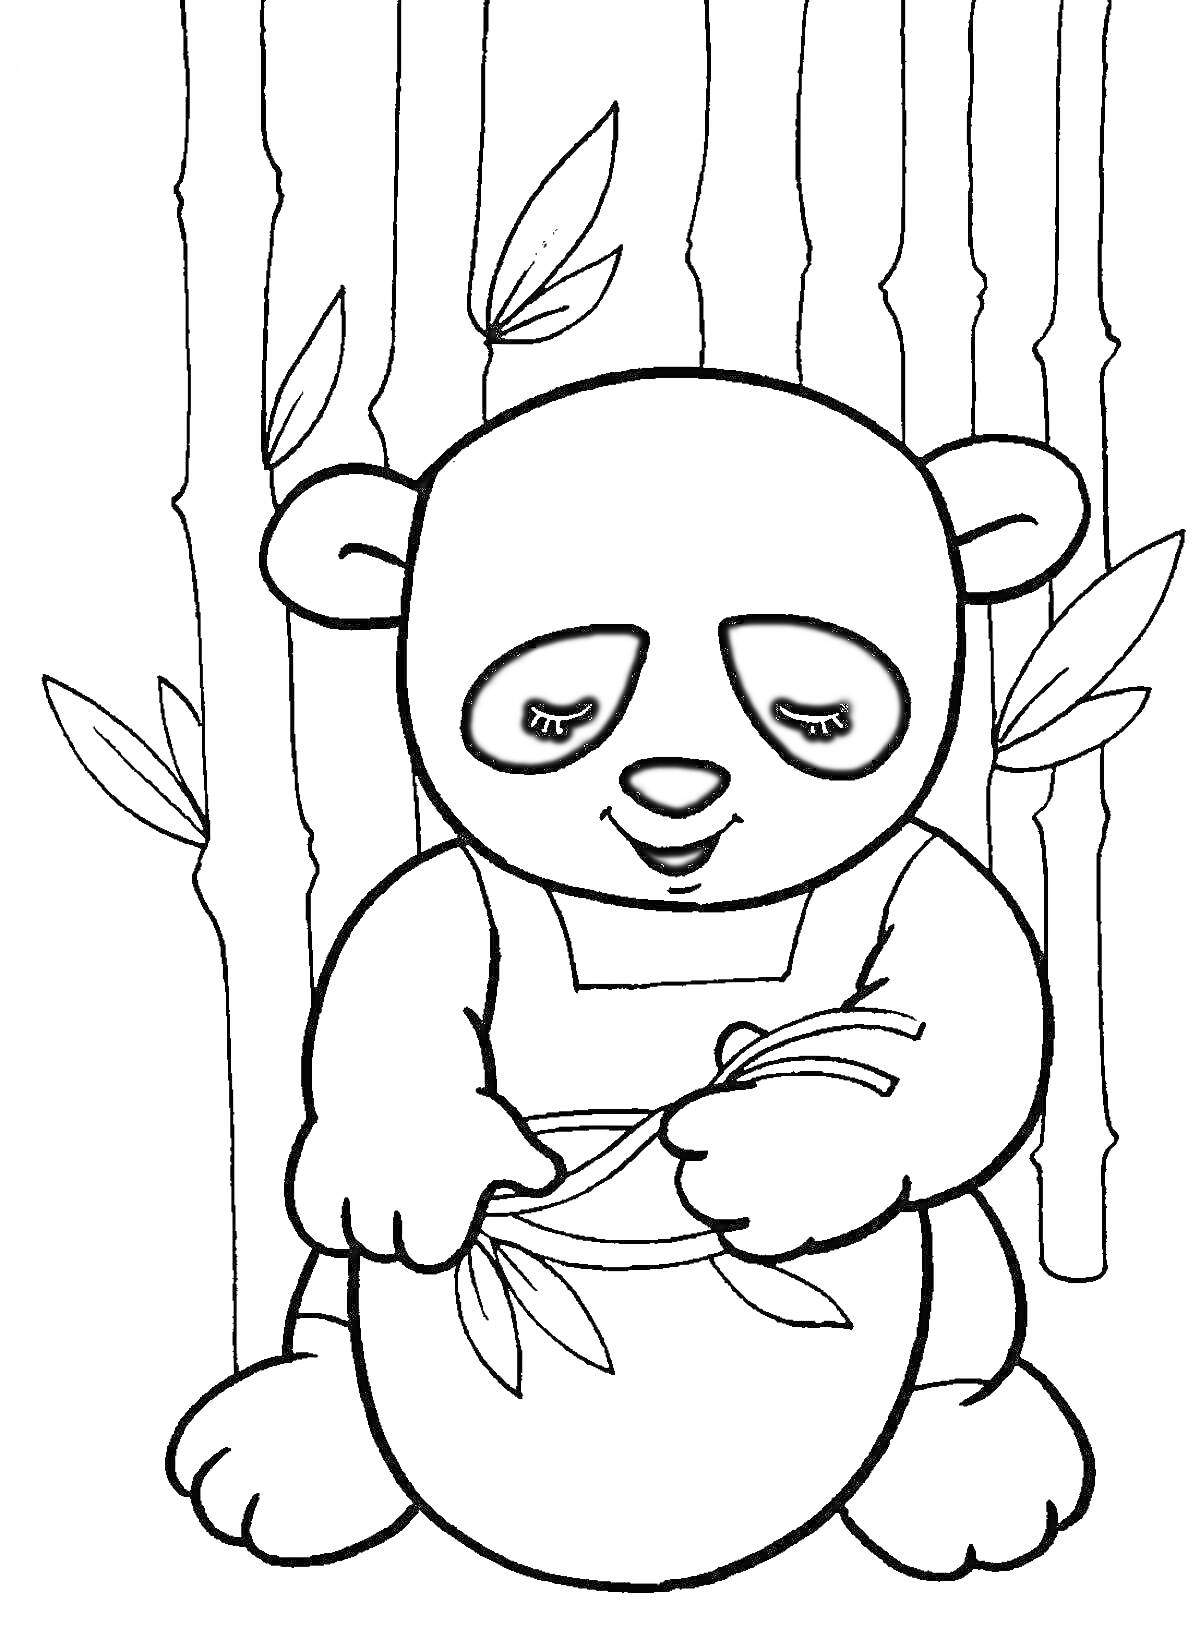 Раскраска Панда, сидящая с банкой и держащая бамбуковые ветки, на фоне бамбукового леса